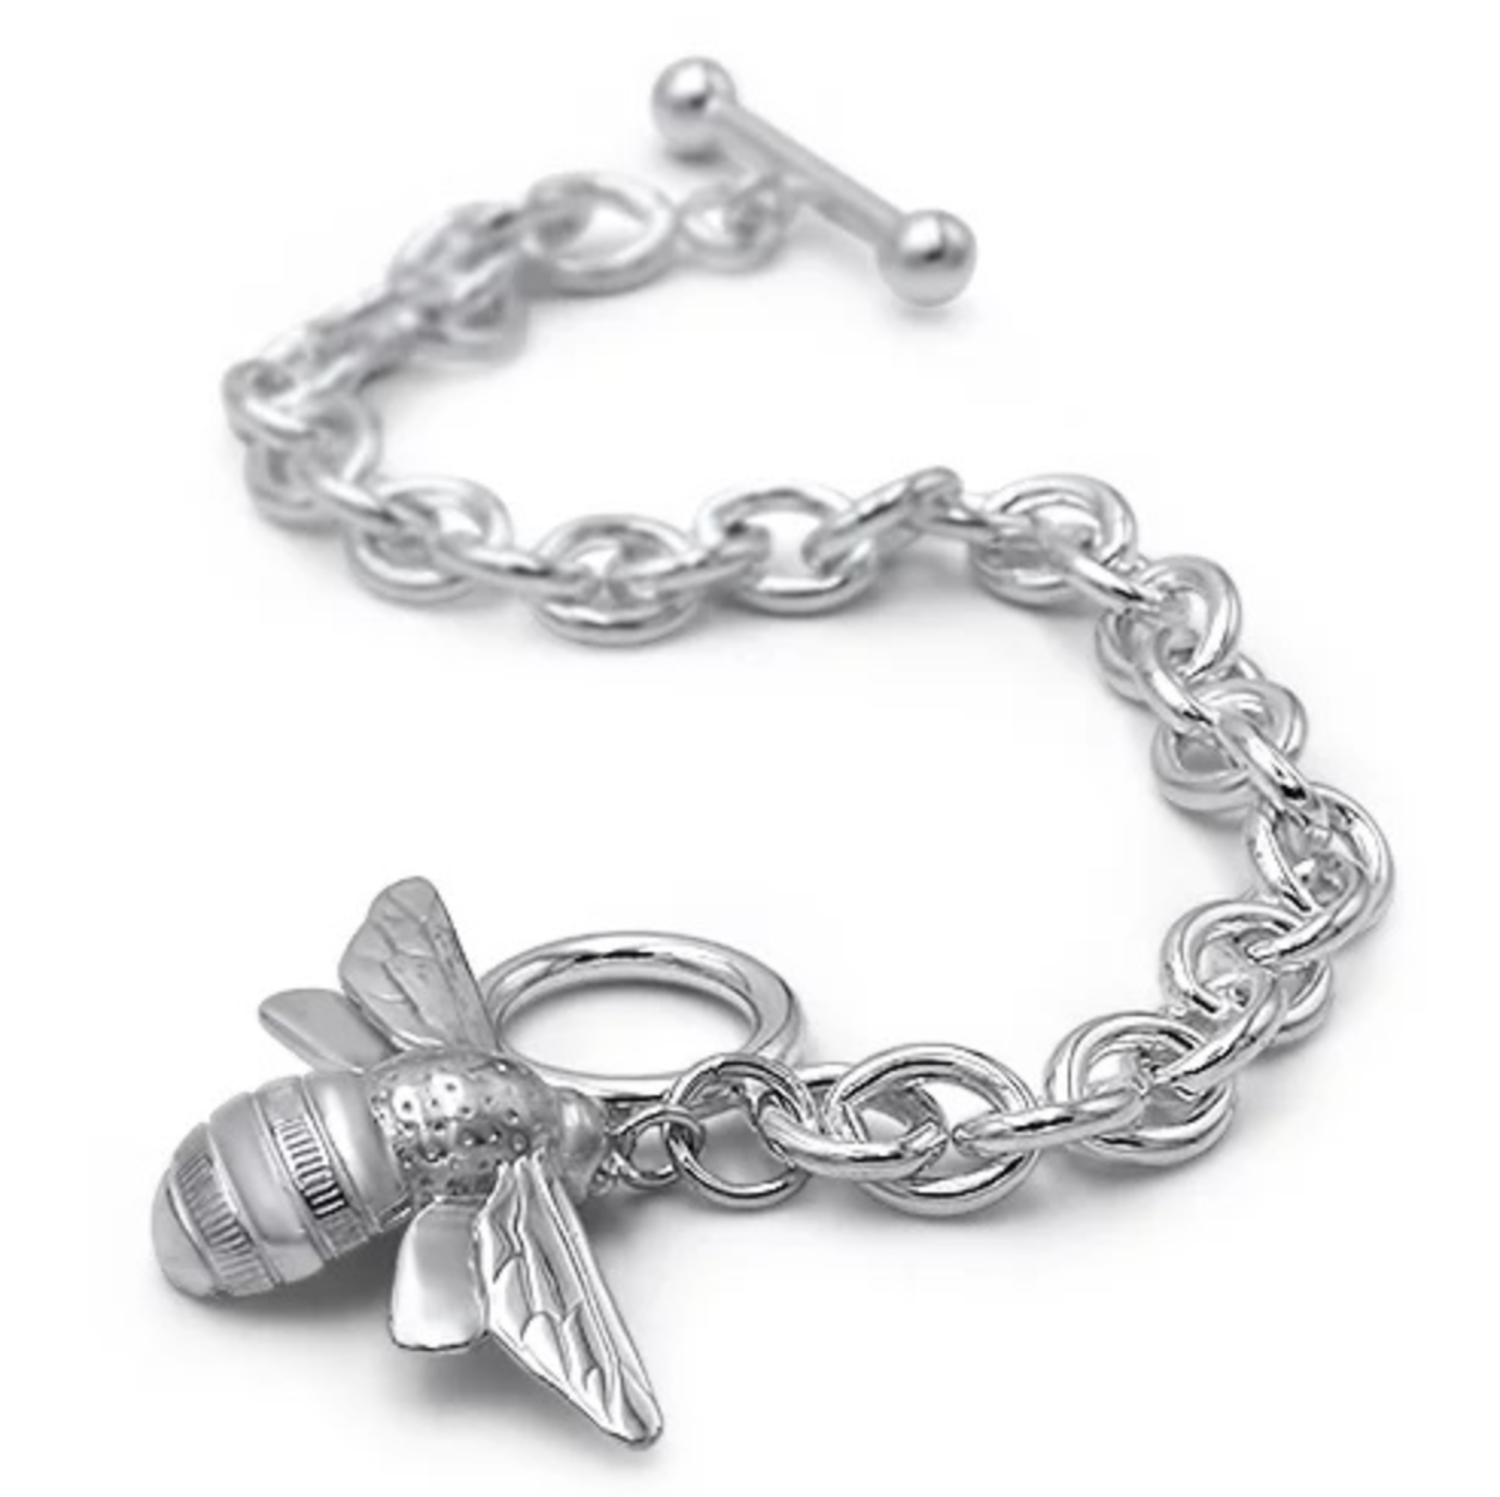 Queen Bee charm bracelet with Carnelian Honey colored gemstones.